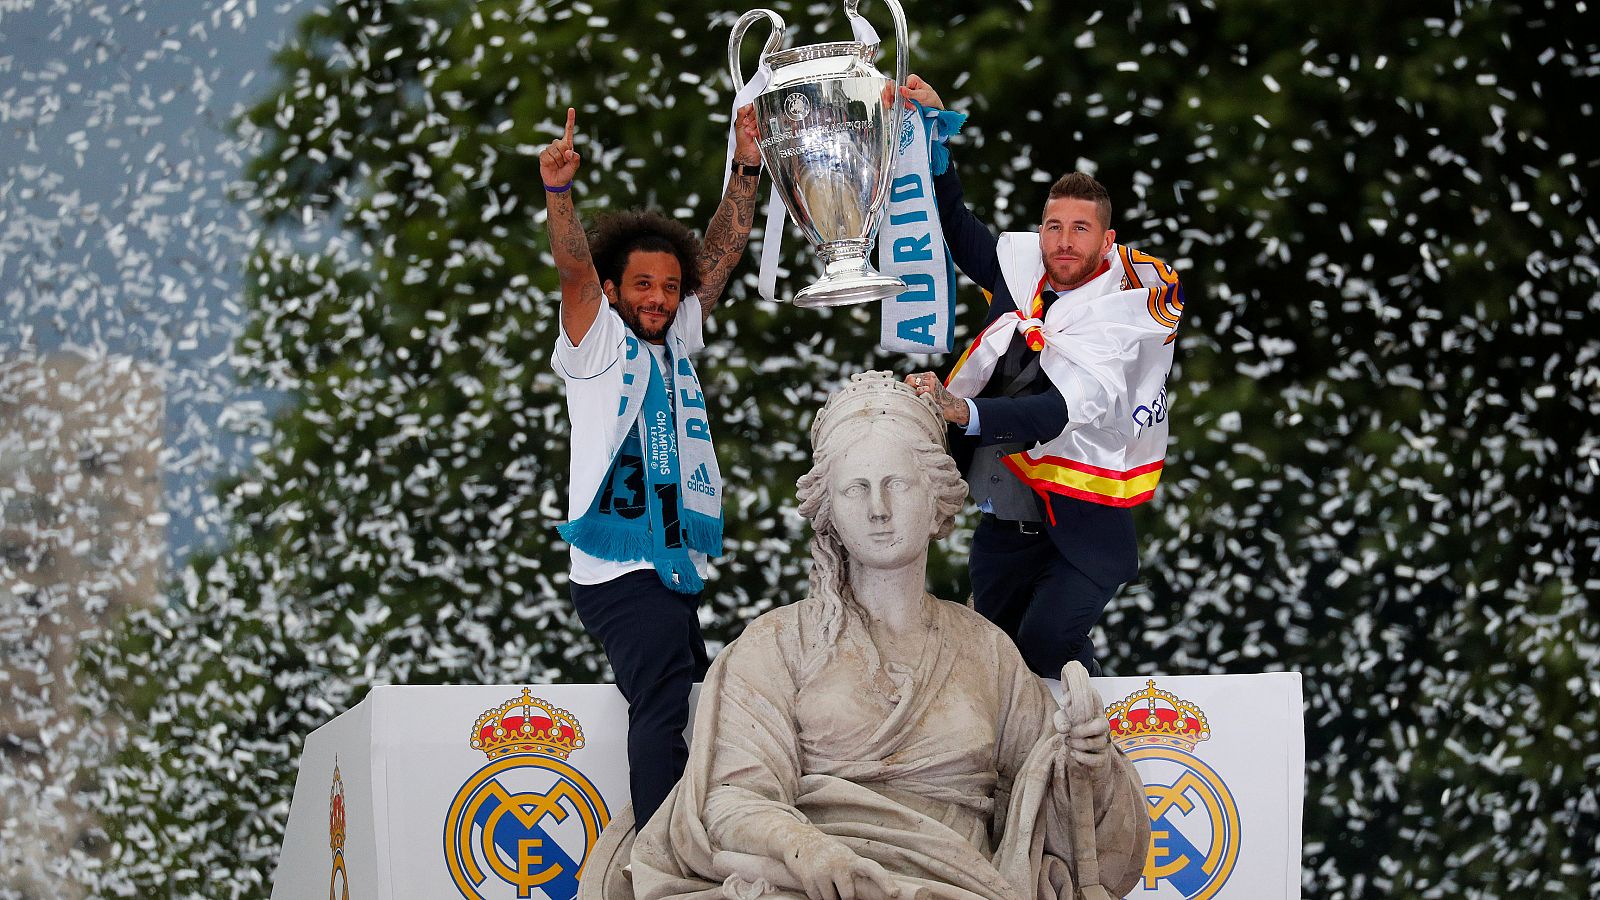 Los jugadores del Real Madrid han celebrado la consecución de la 13ª Champions de su equipo en la estatua de Cibeles, tradicional lugar de festejo de los triunfos merengues.